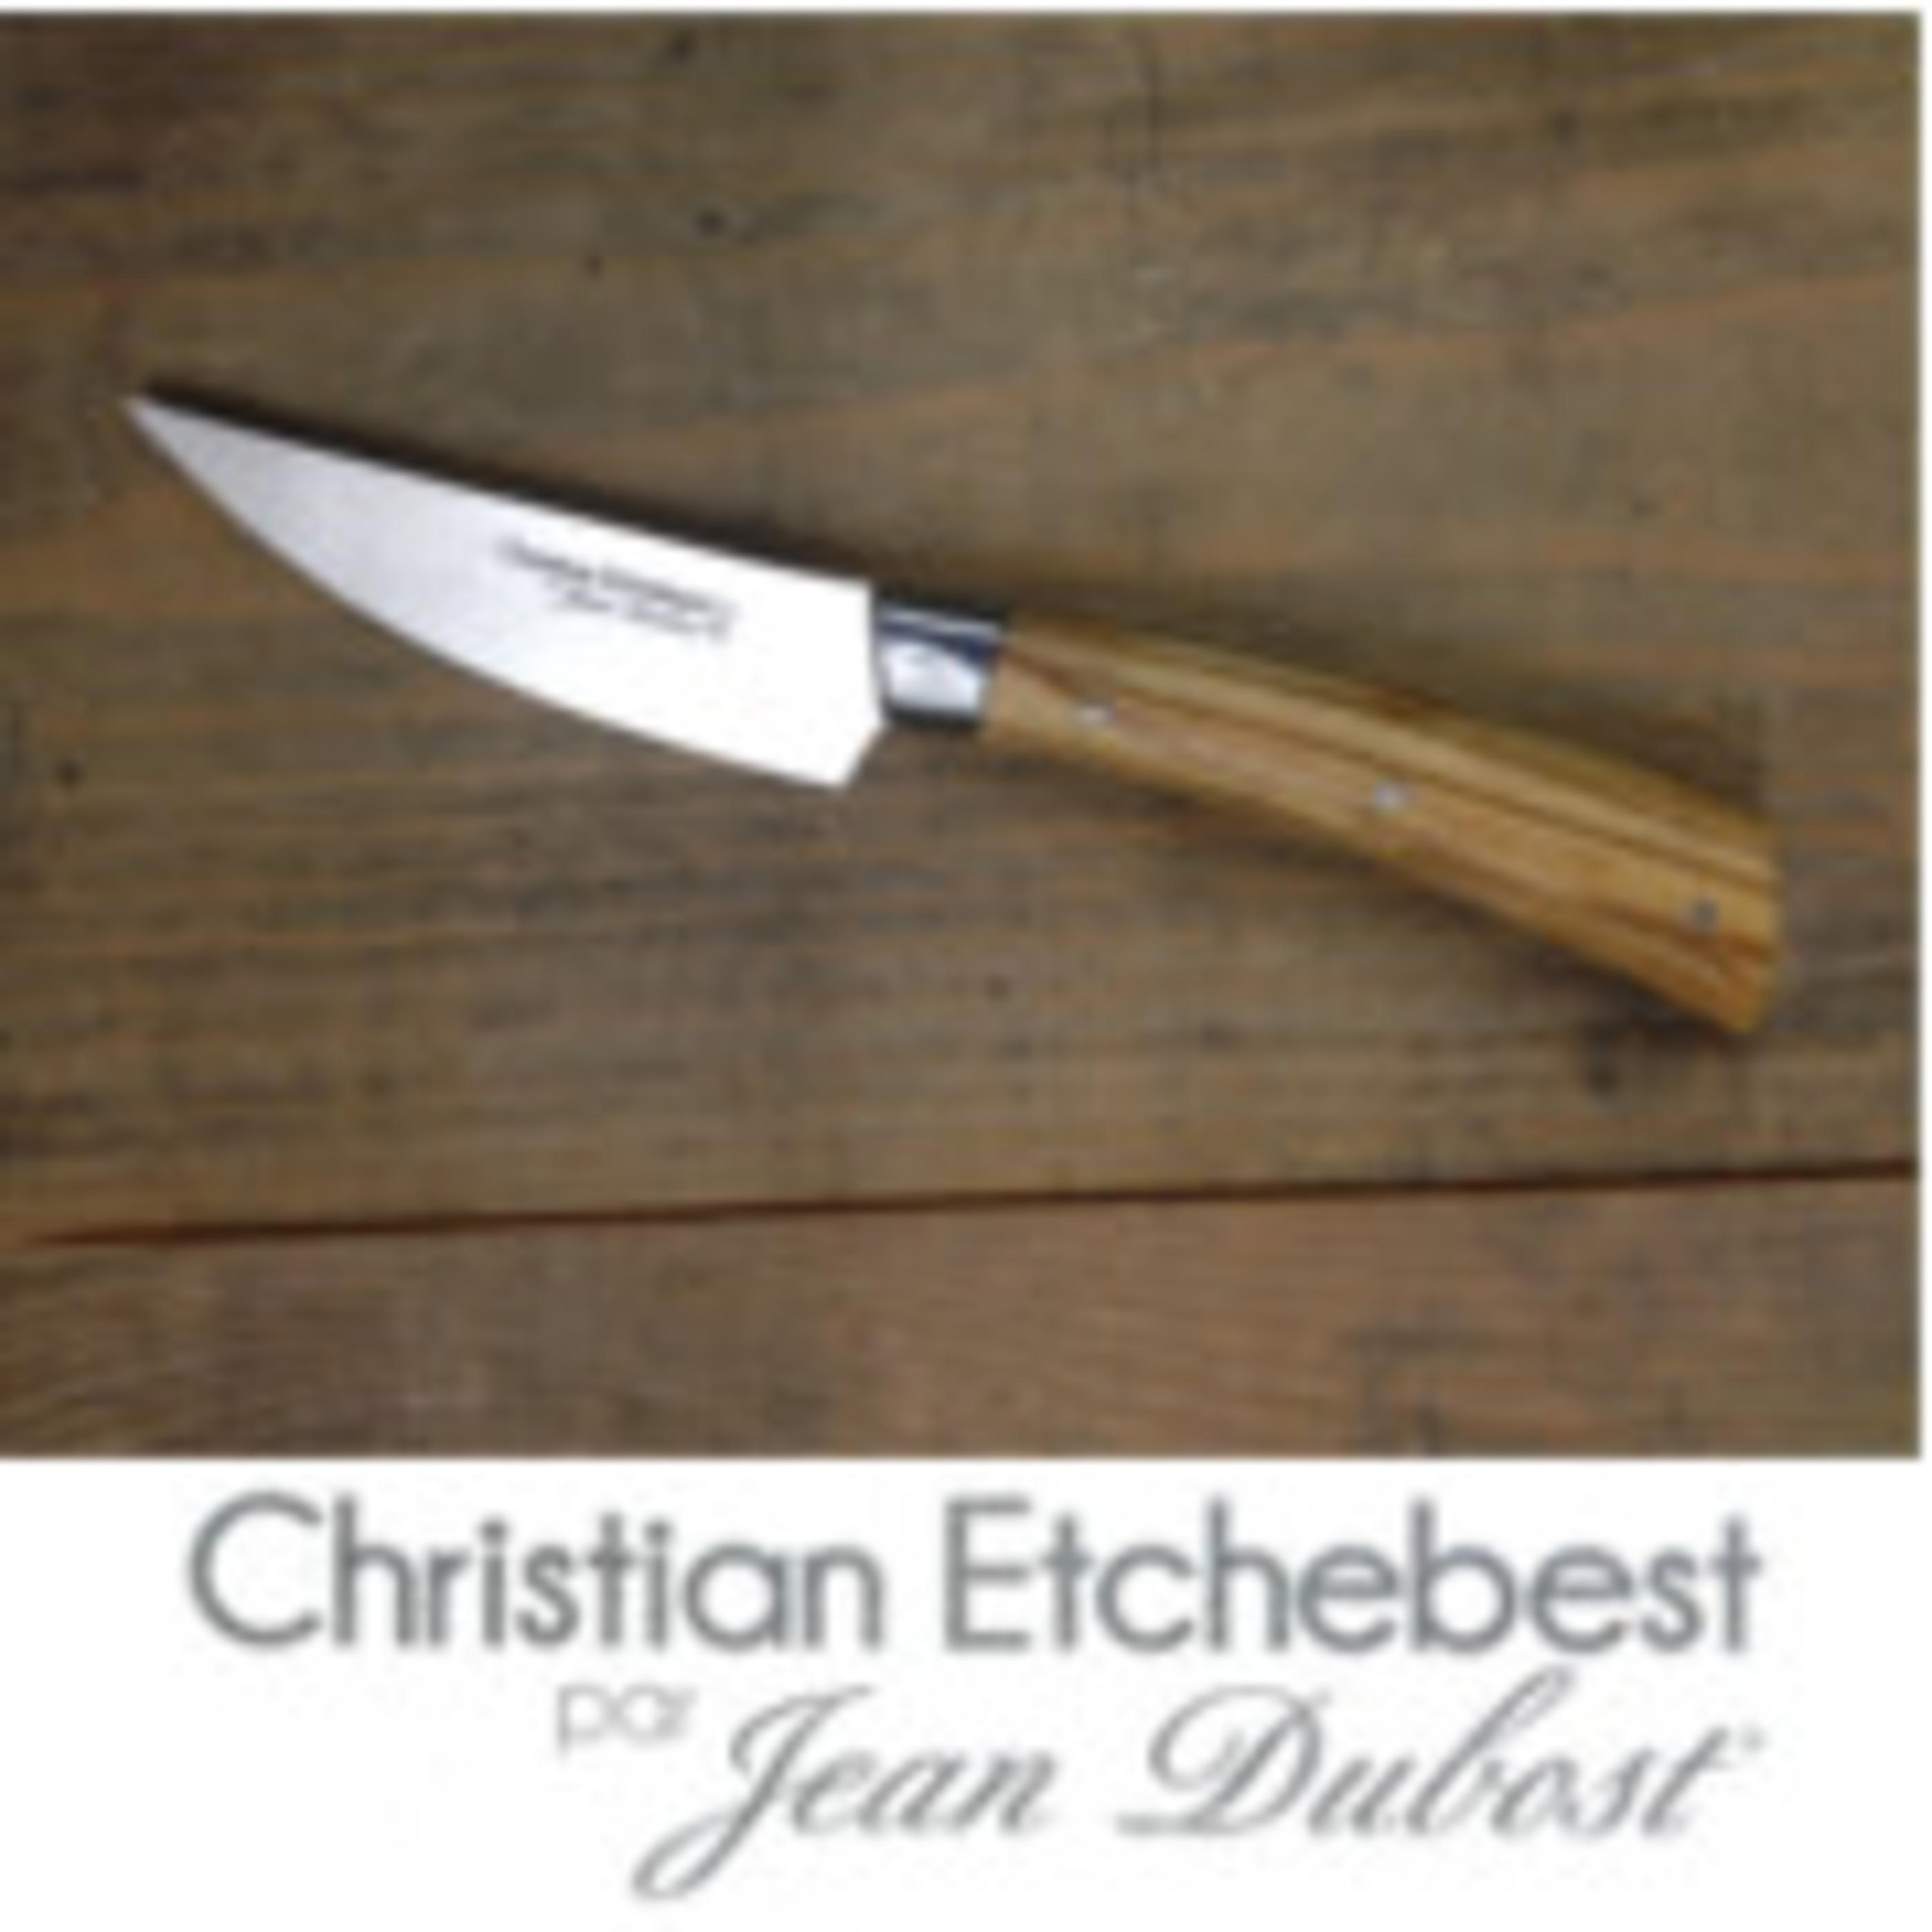 Couteau Christian Etchebest manche en bois d'olivier, set fruits de mer bloc Laguiole Jean Dubost